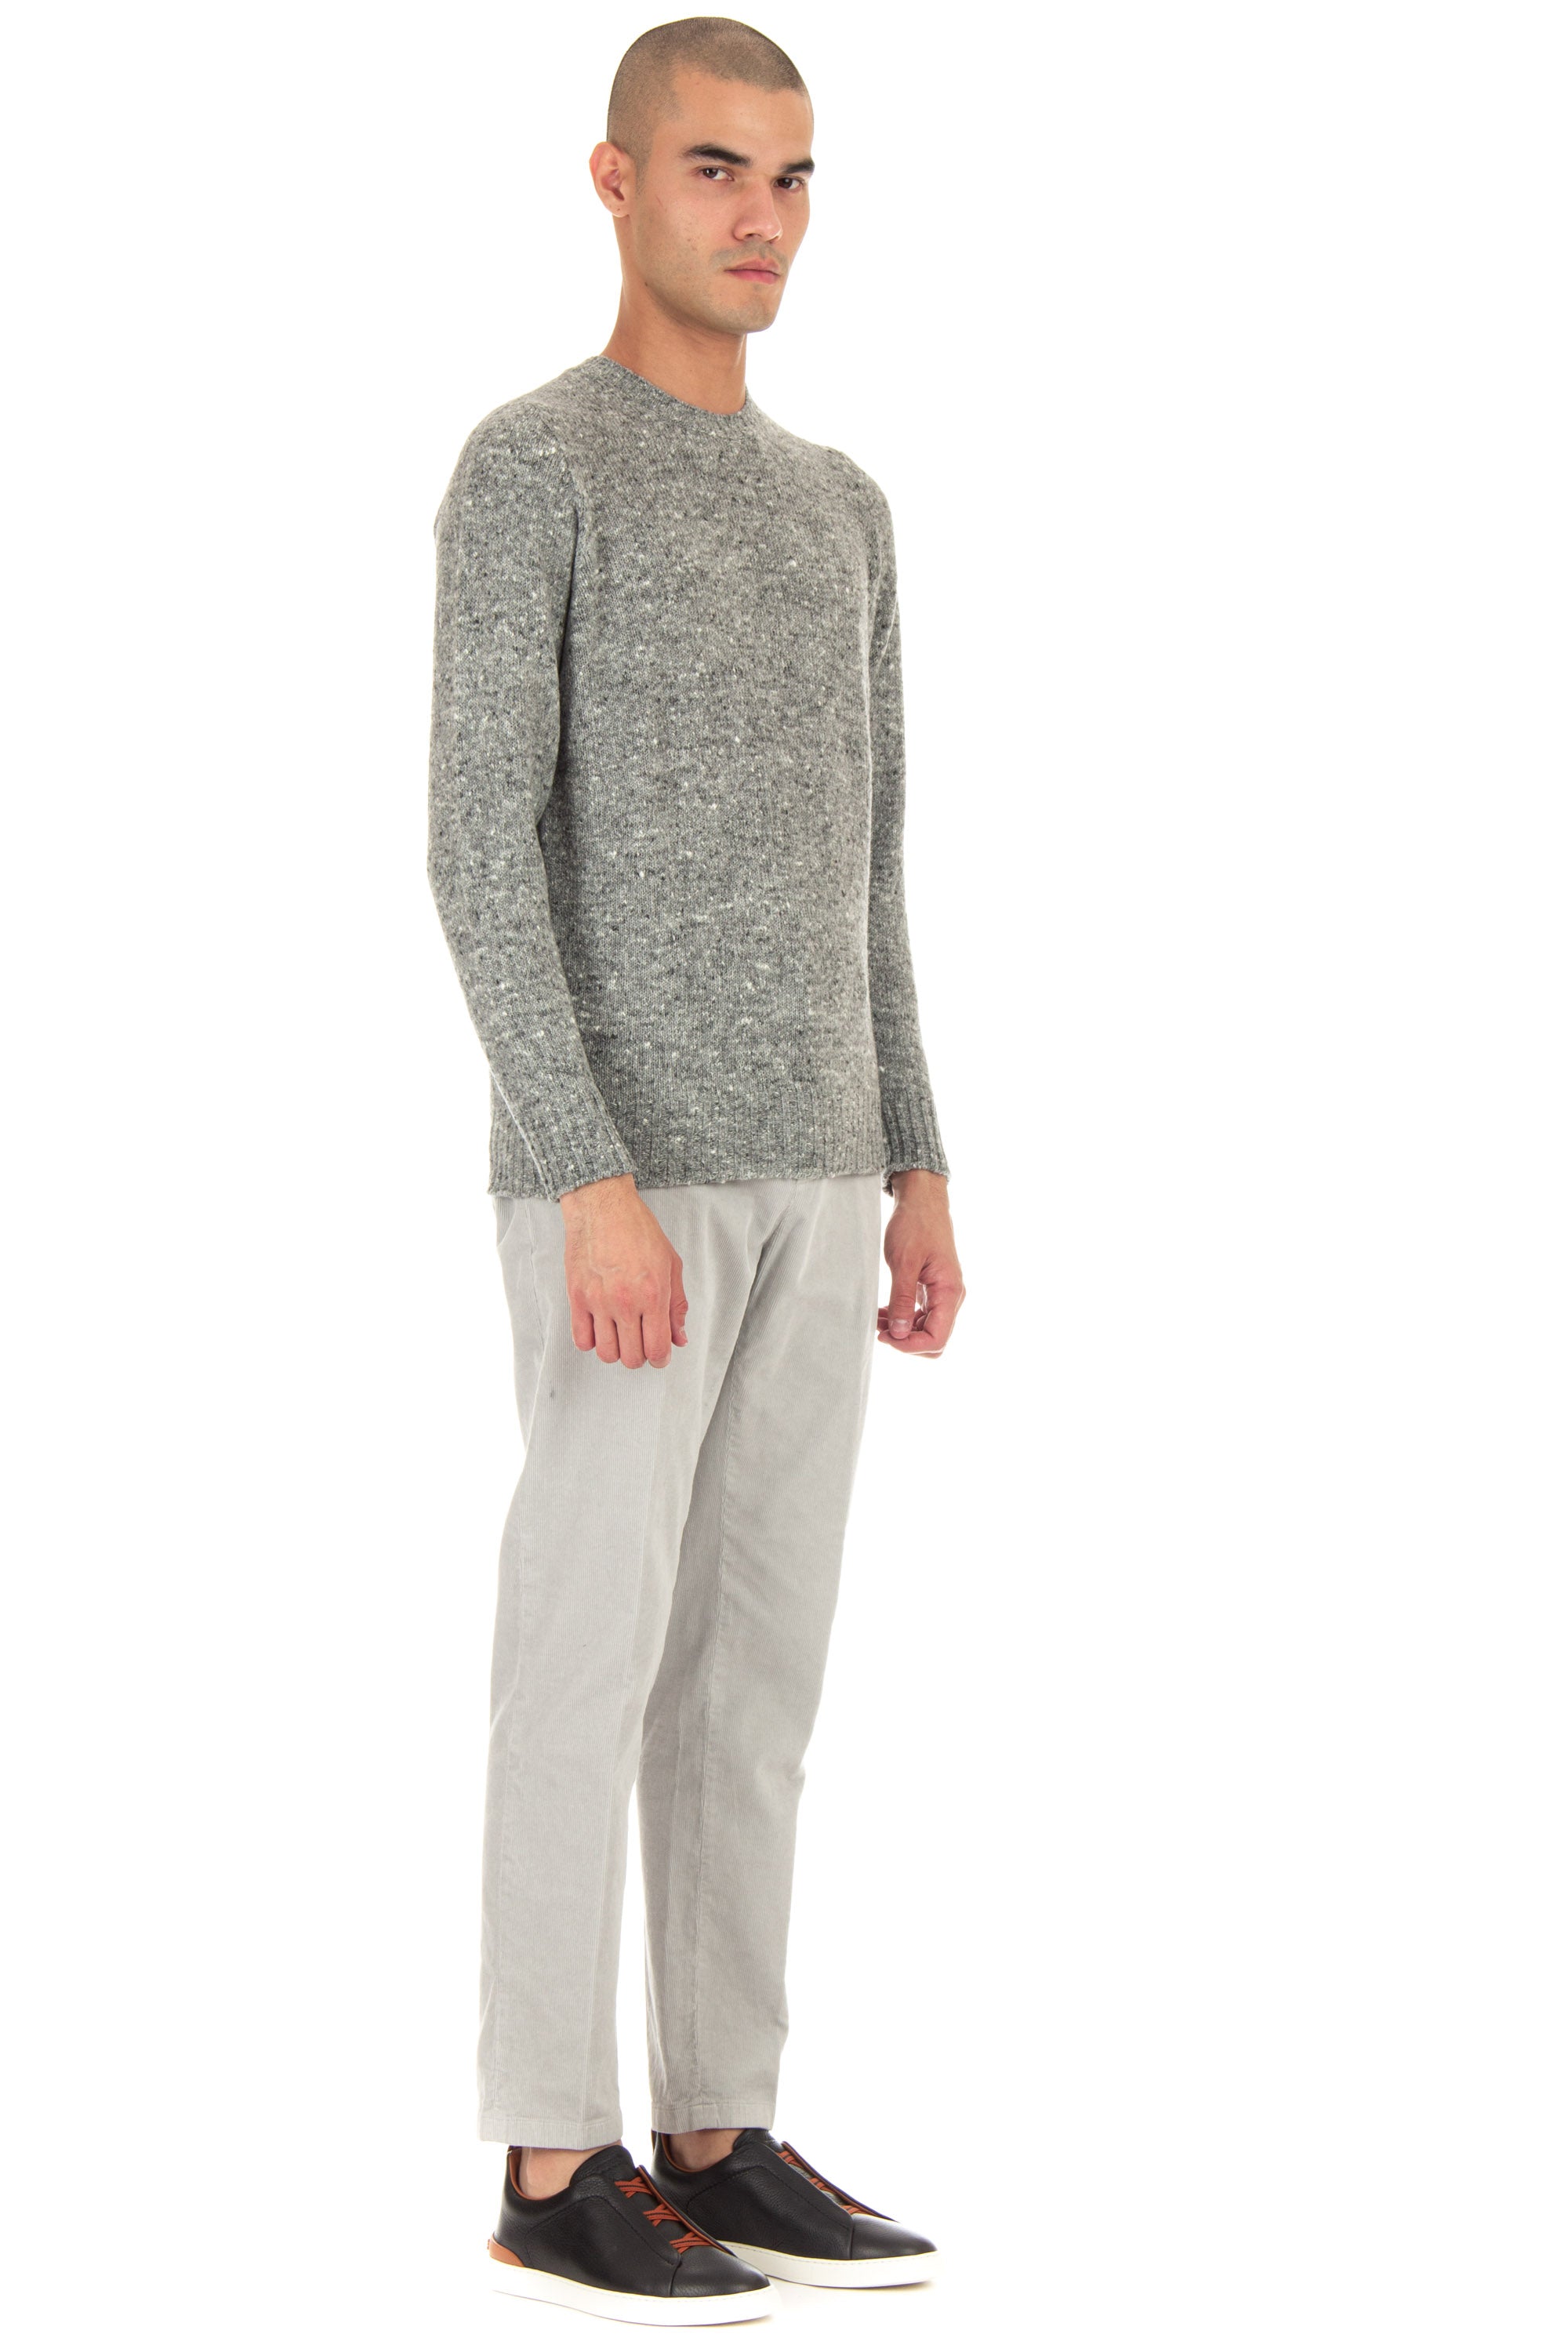 Knickerbocker wool crewneck sweater in wool-cashmere